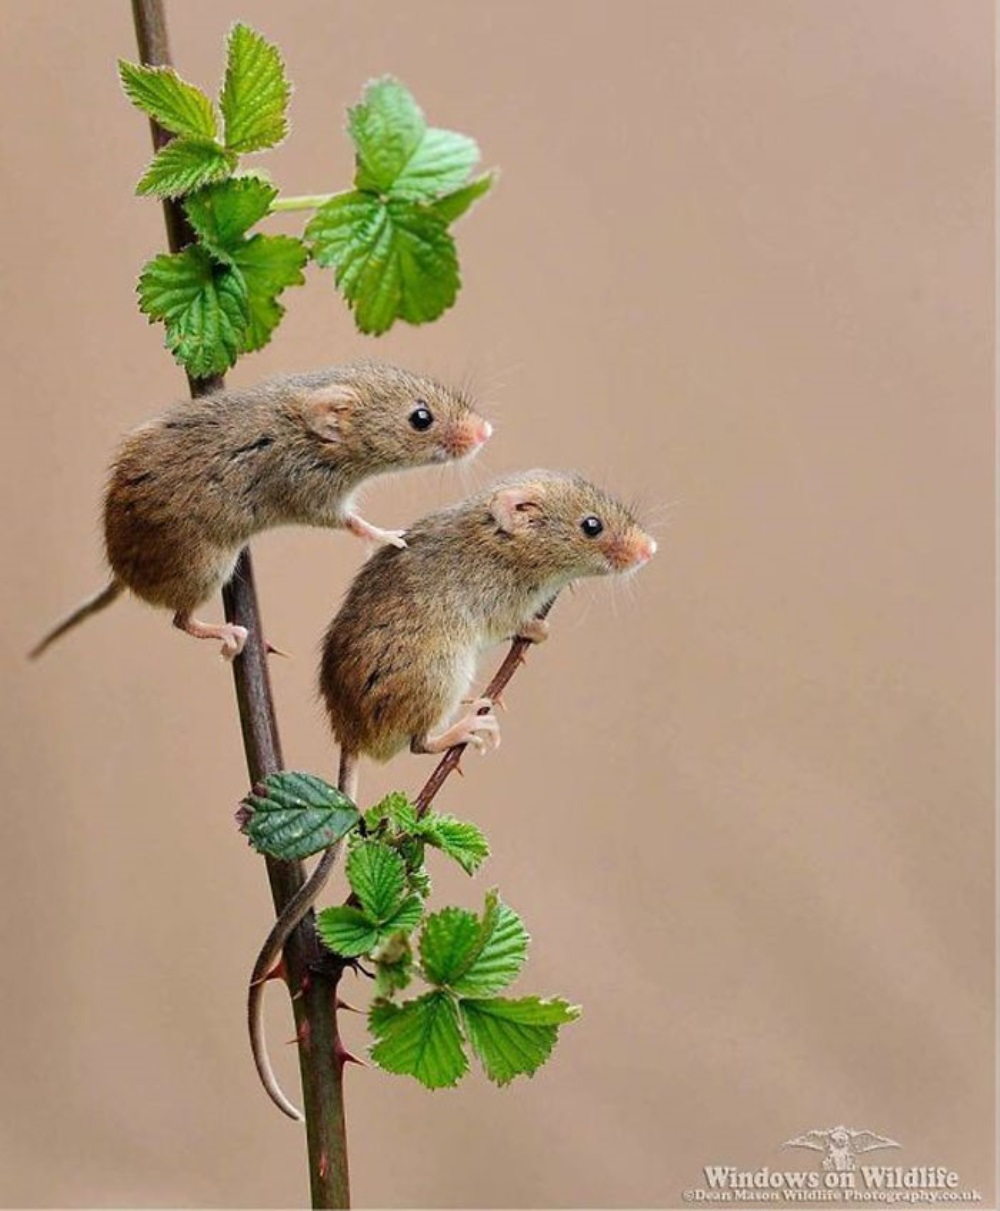 Δύο ποντίκια ανέβηκαν σε ένα φυτό